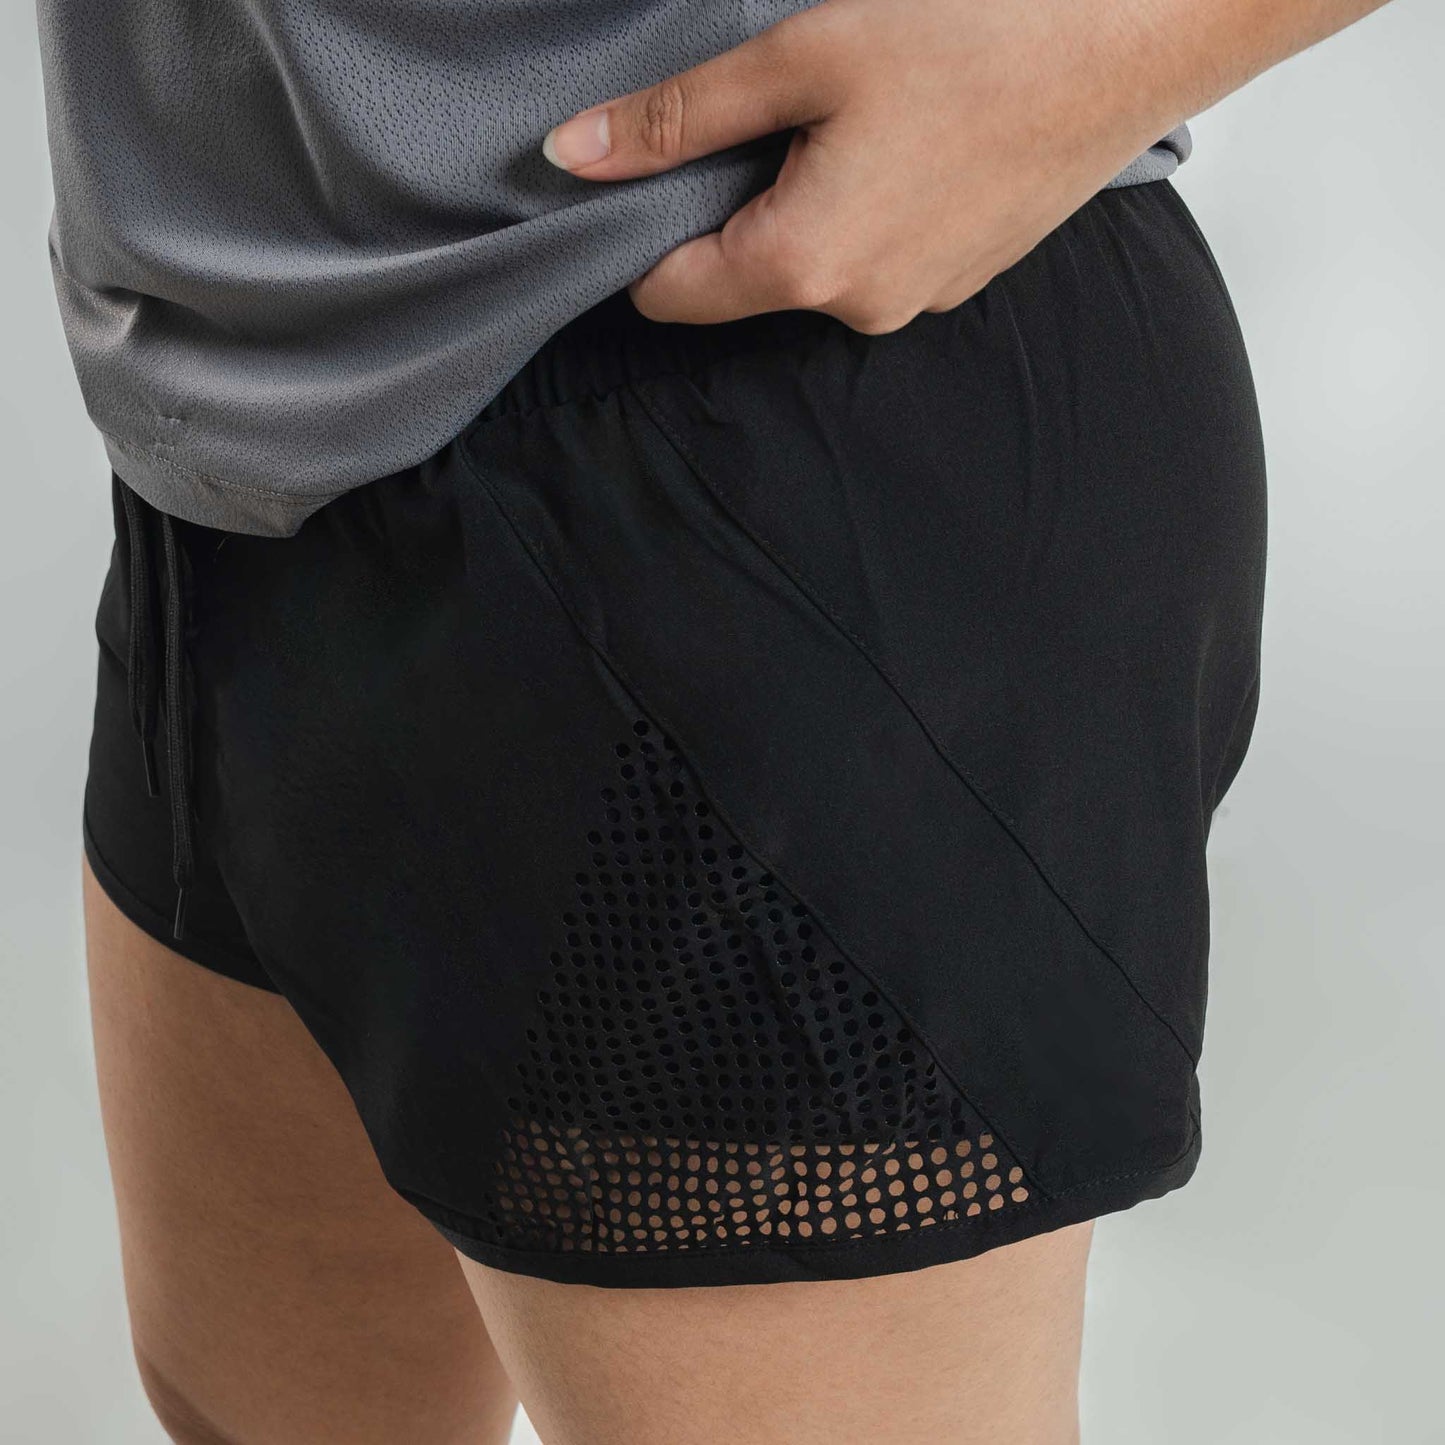 Ladies Squat Shorts